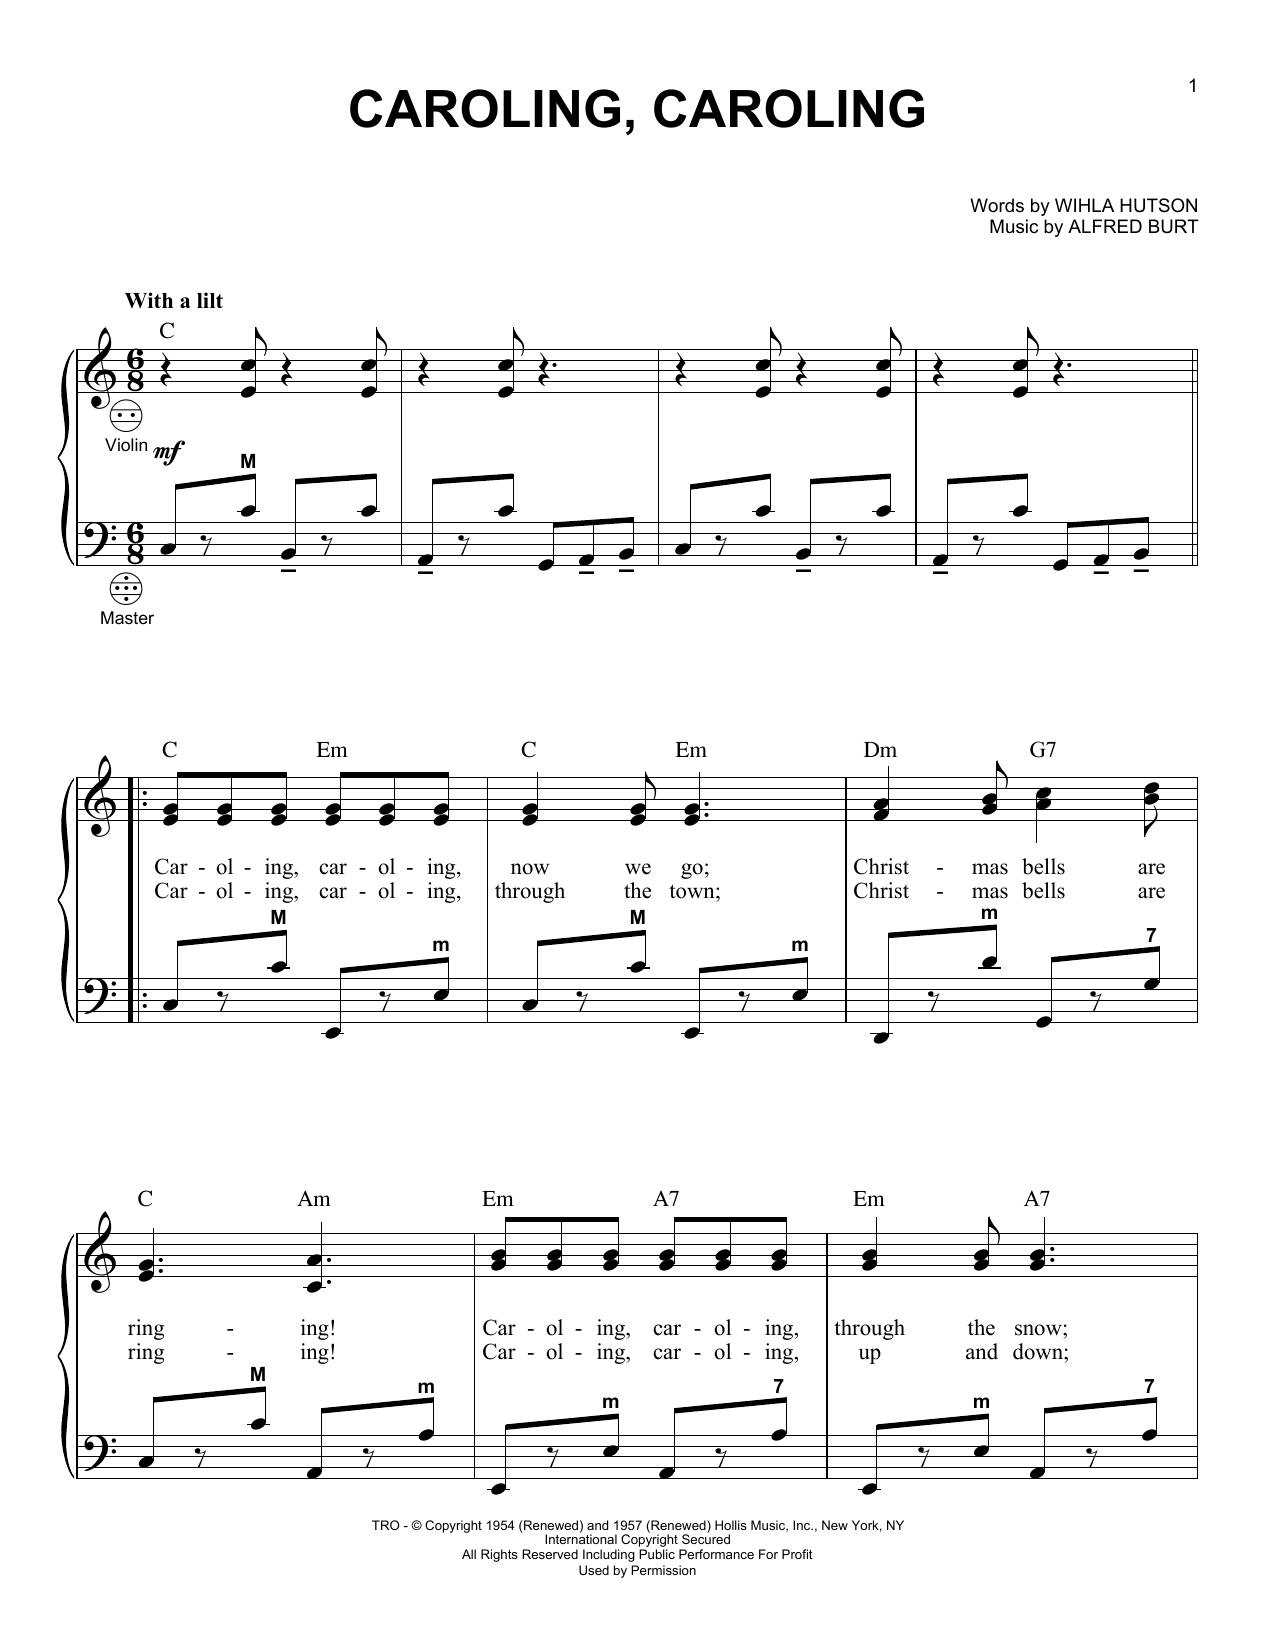 Alfred Burt Caroling, Caroling Sheet Music Notes & Chords for Real Book – Melody, Lyrics & Chords - Download or Print PDF